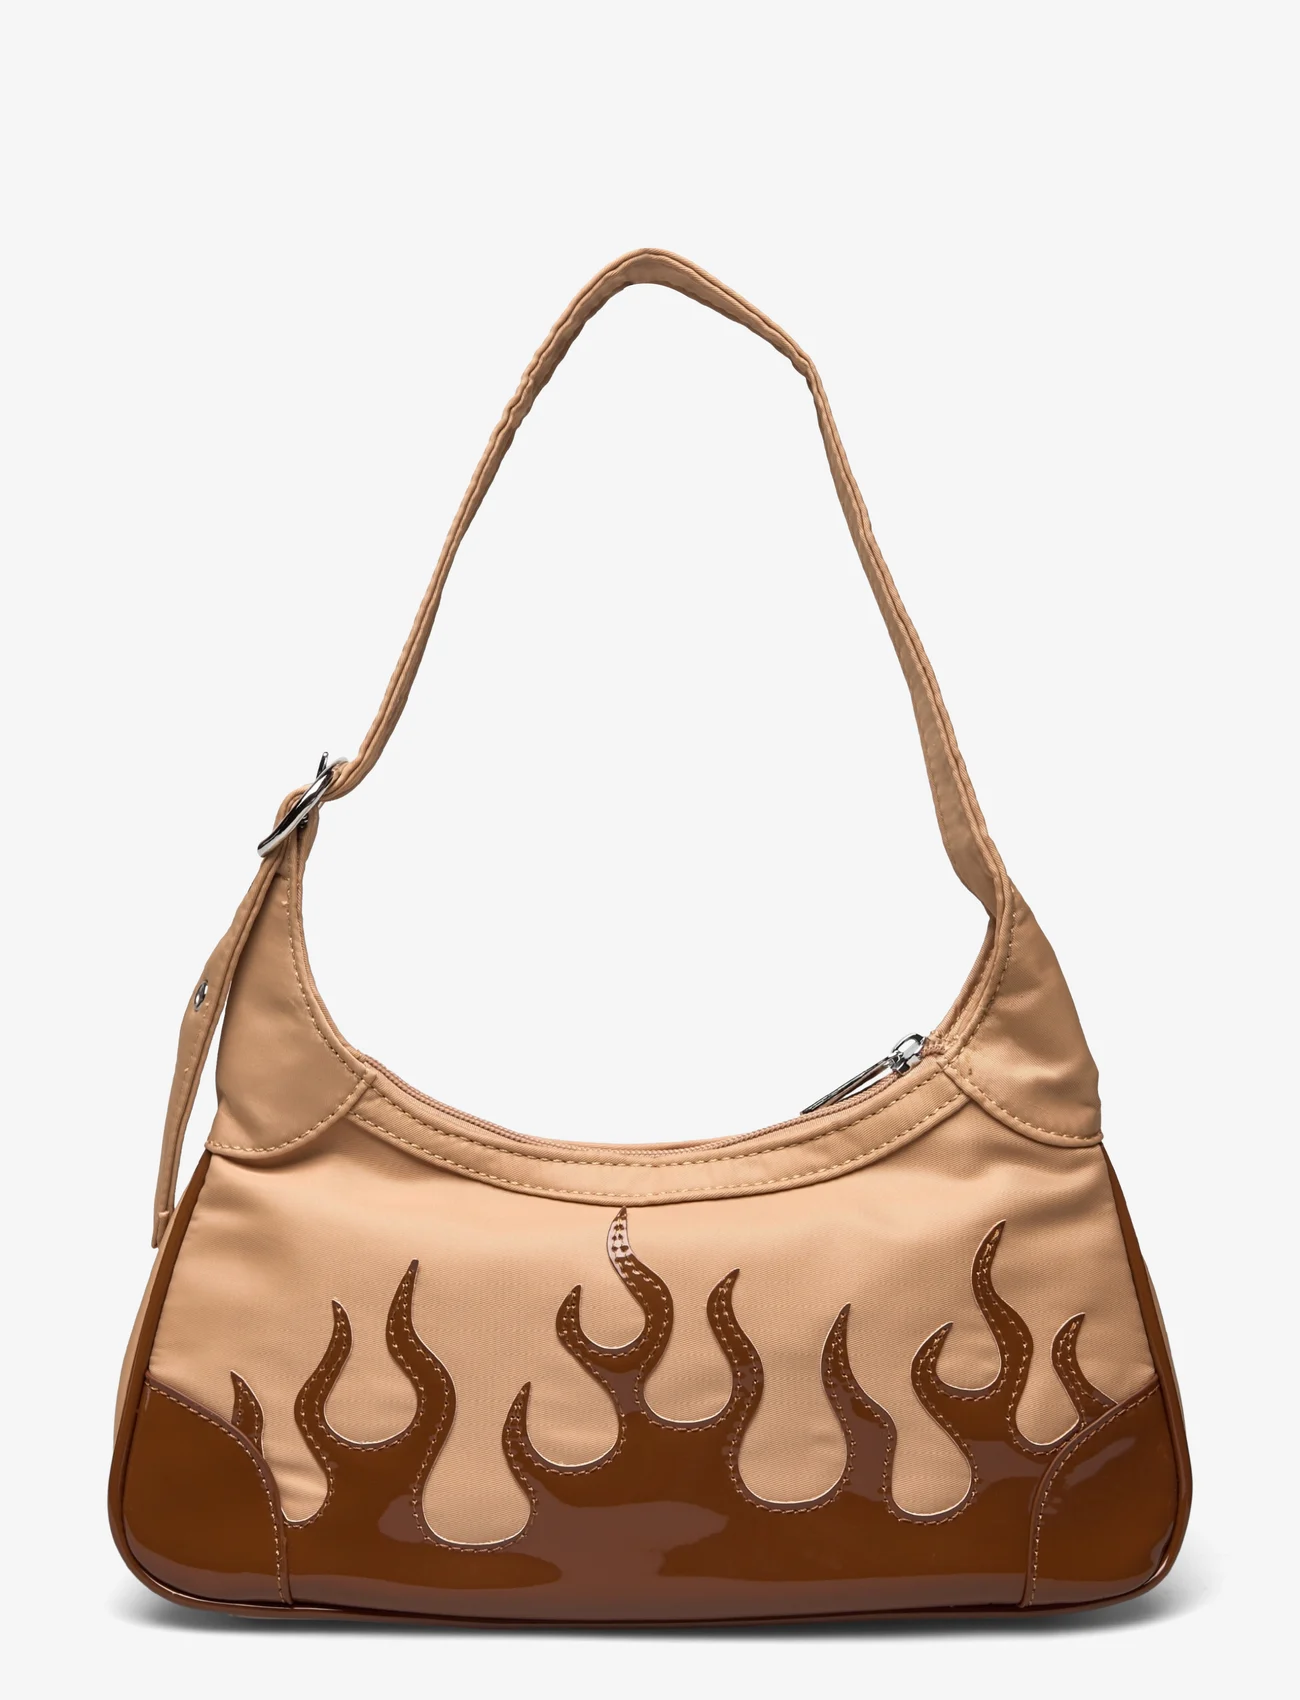 Silfen - Thora - Flame Shoulder Bag - festmode zu outlet-preisen - mocca - 1